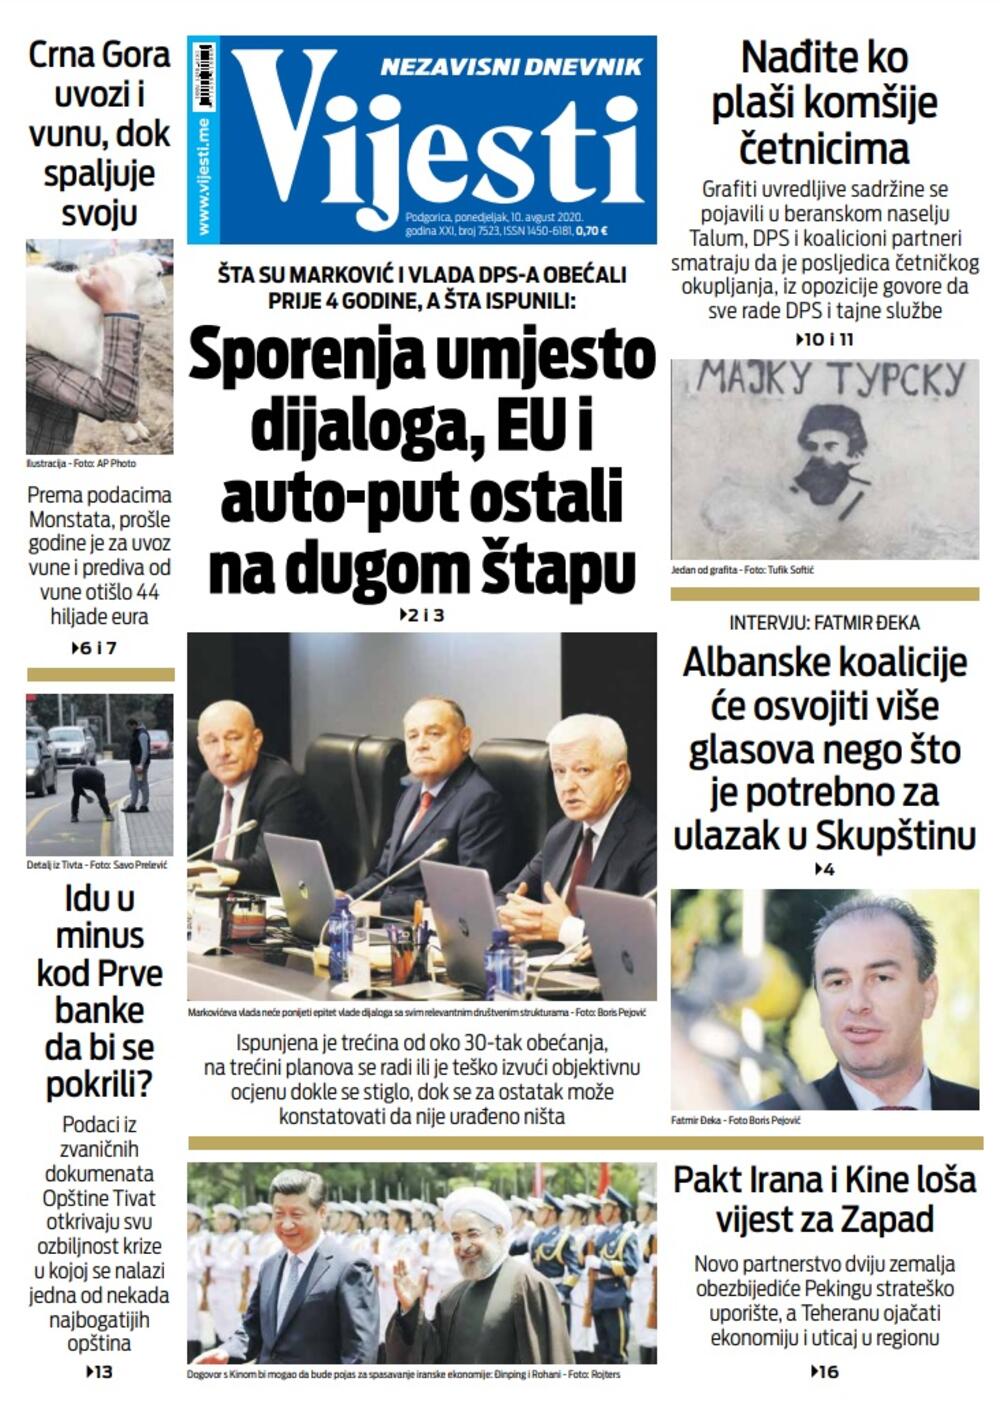 Naslovna strana "Vijesti" za 10. avgust, Foto: Vijesti